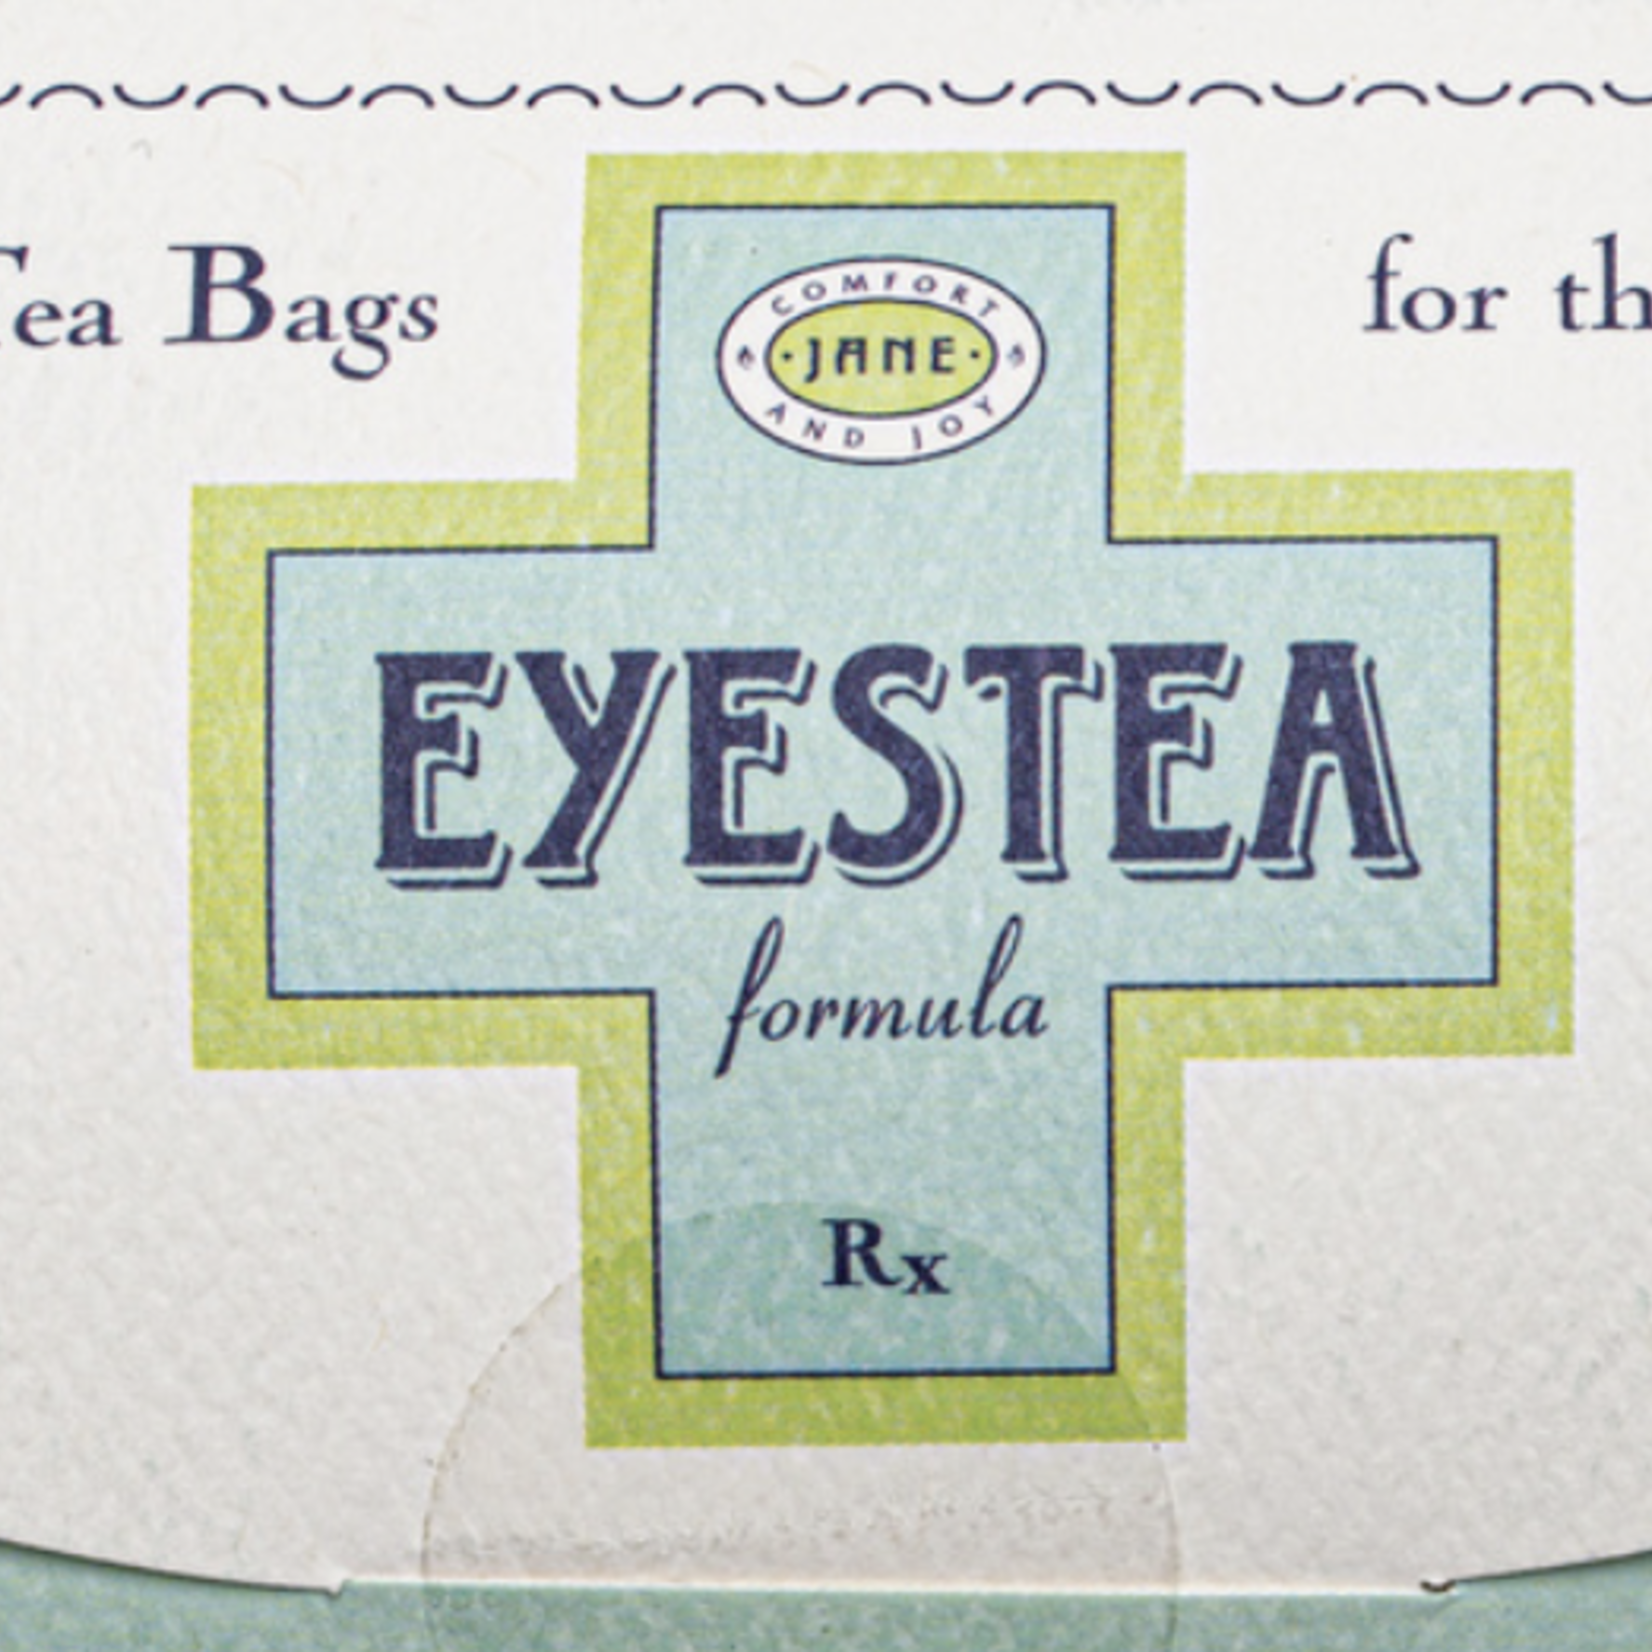 BAUDELAIRE EYESTEA-8 Herbal Tea Bags For The Eyes